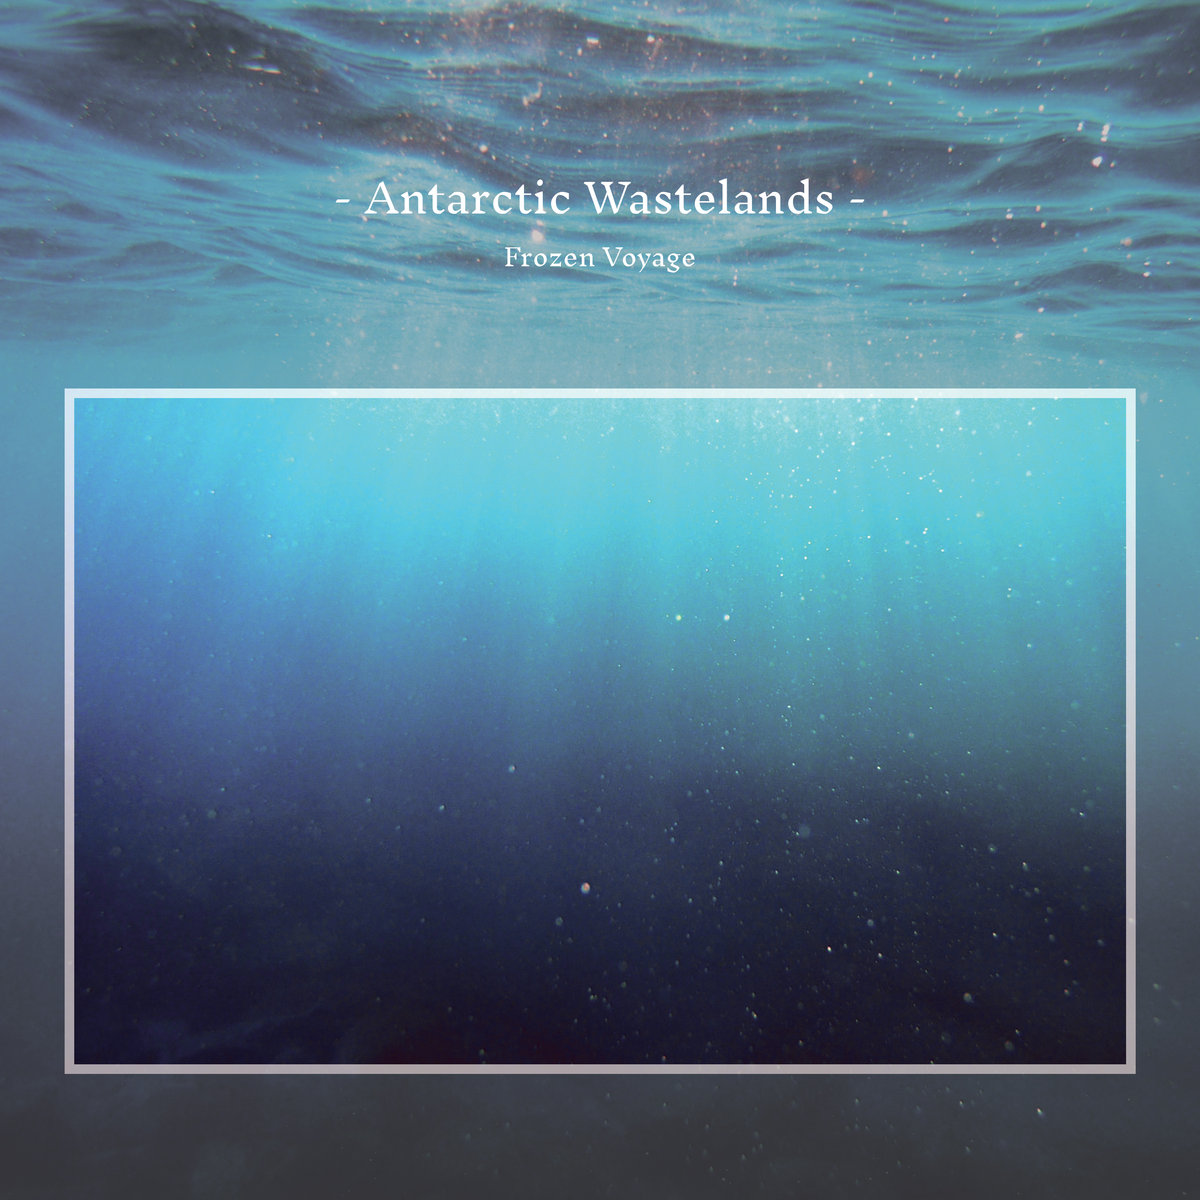 Anarctic Wastelands - Frozen Voyage